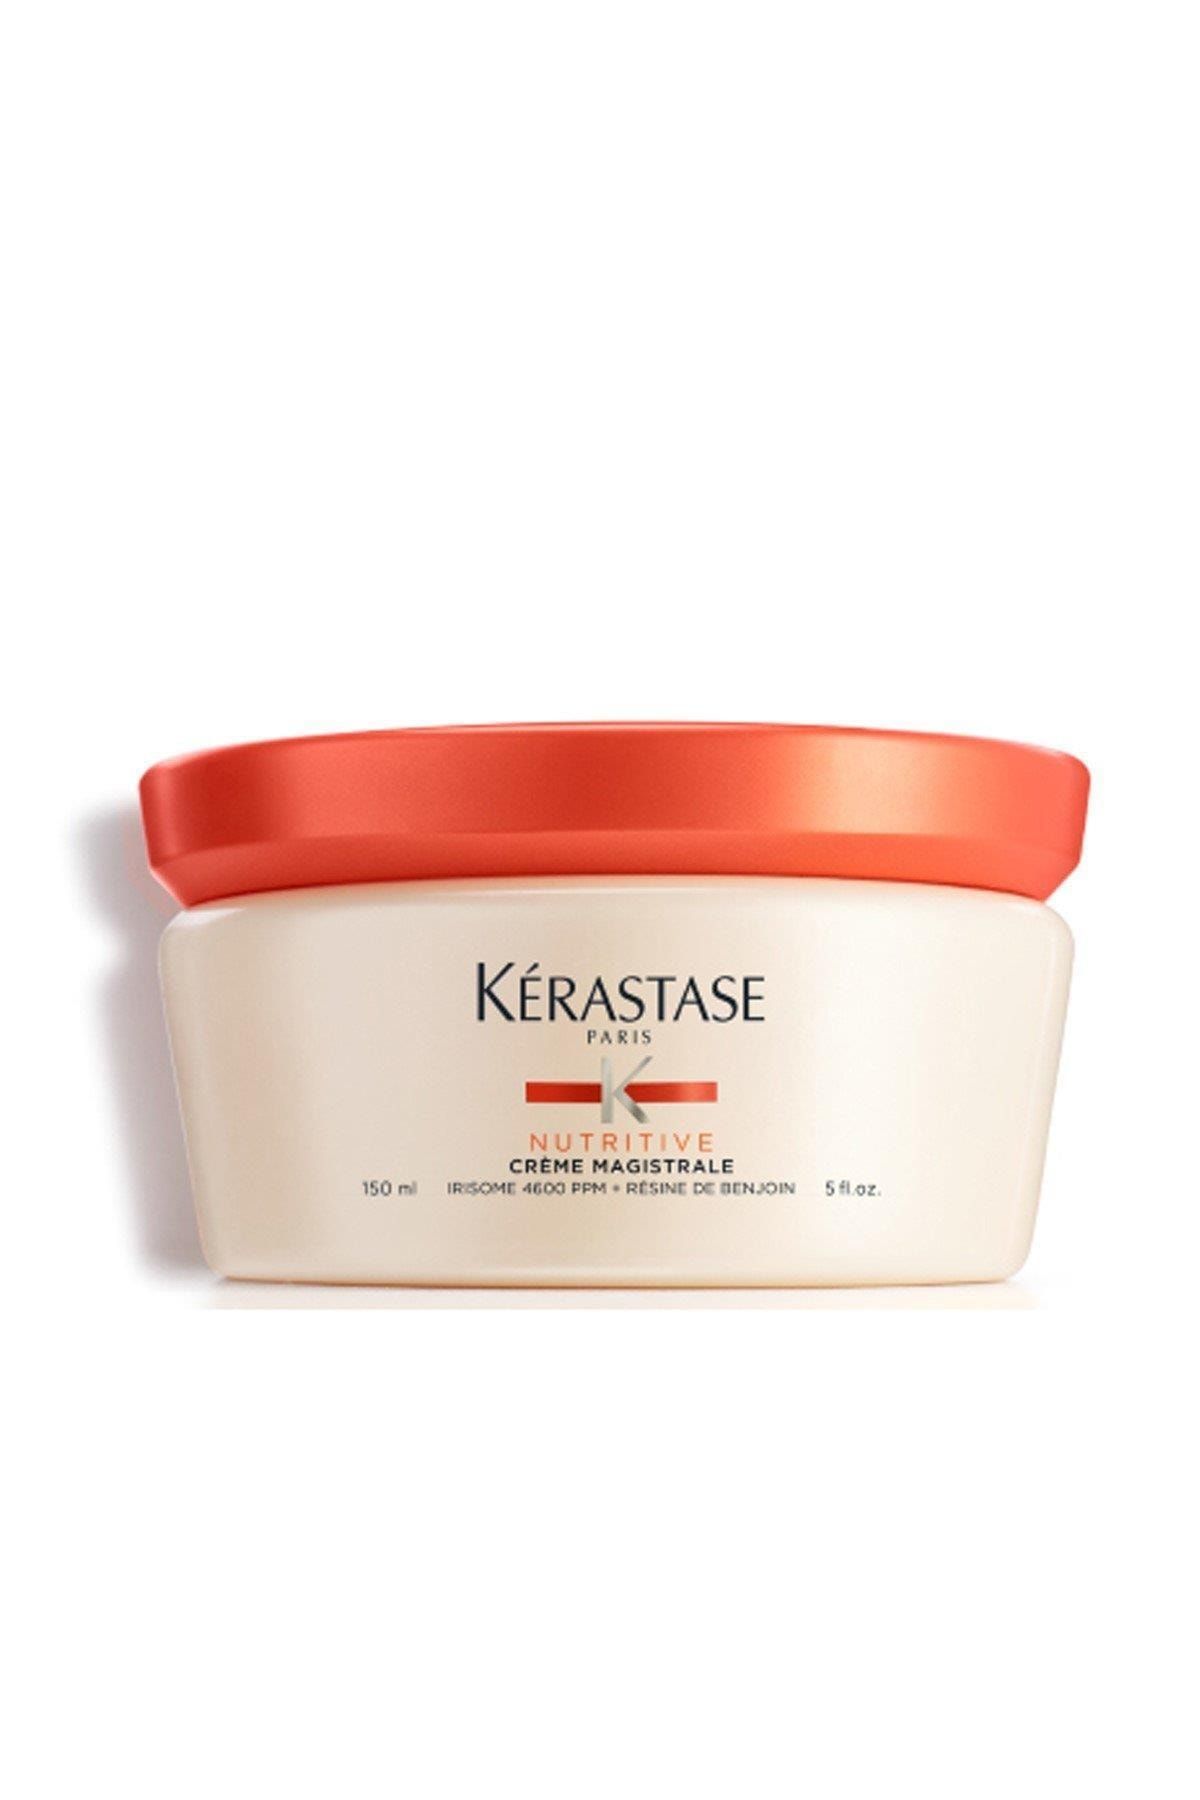 Kerastase Nutritive Creme Magistrale - Aşırı Kuru Saçlar İçin Yoğun Nem Veren Besleyici Saç Kremi 150 ml